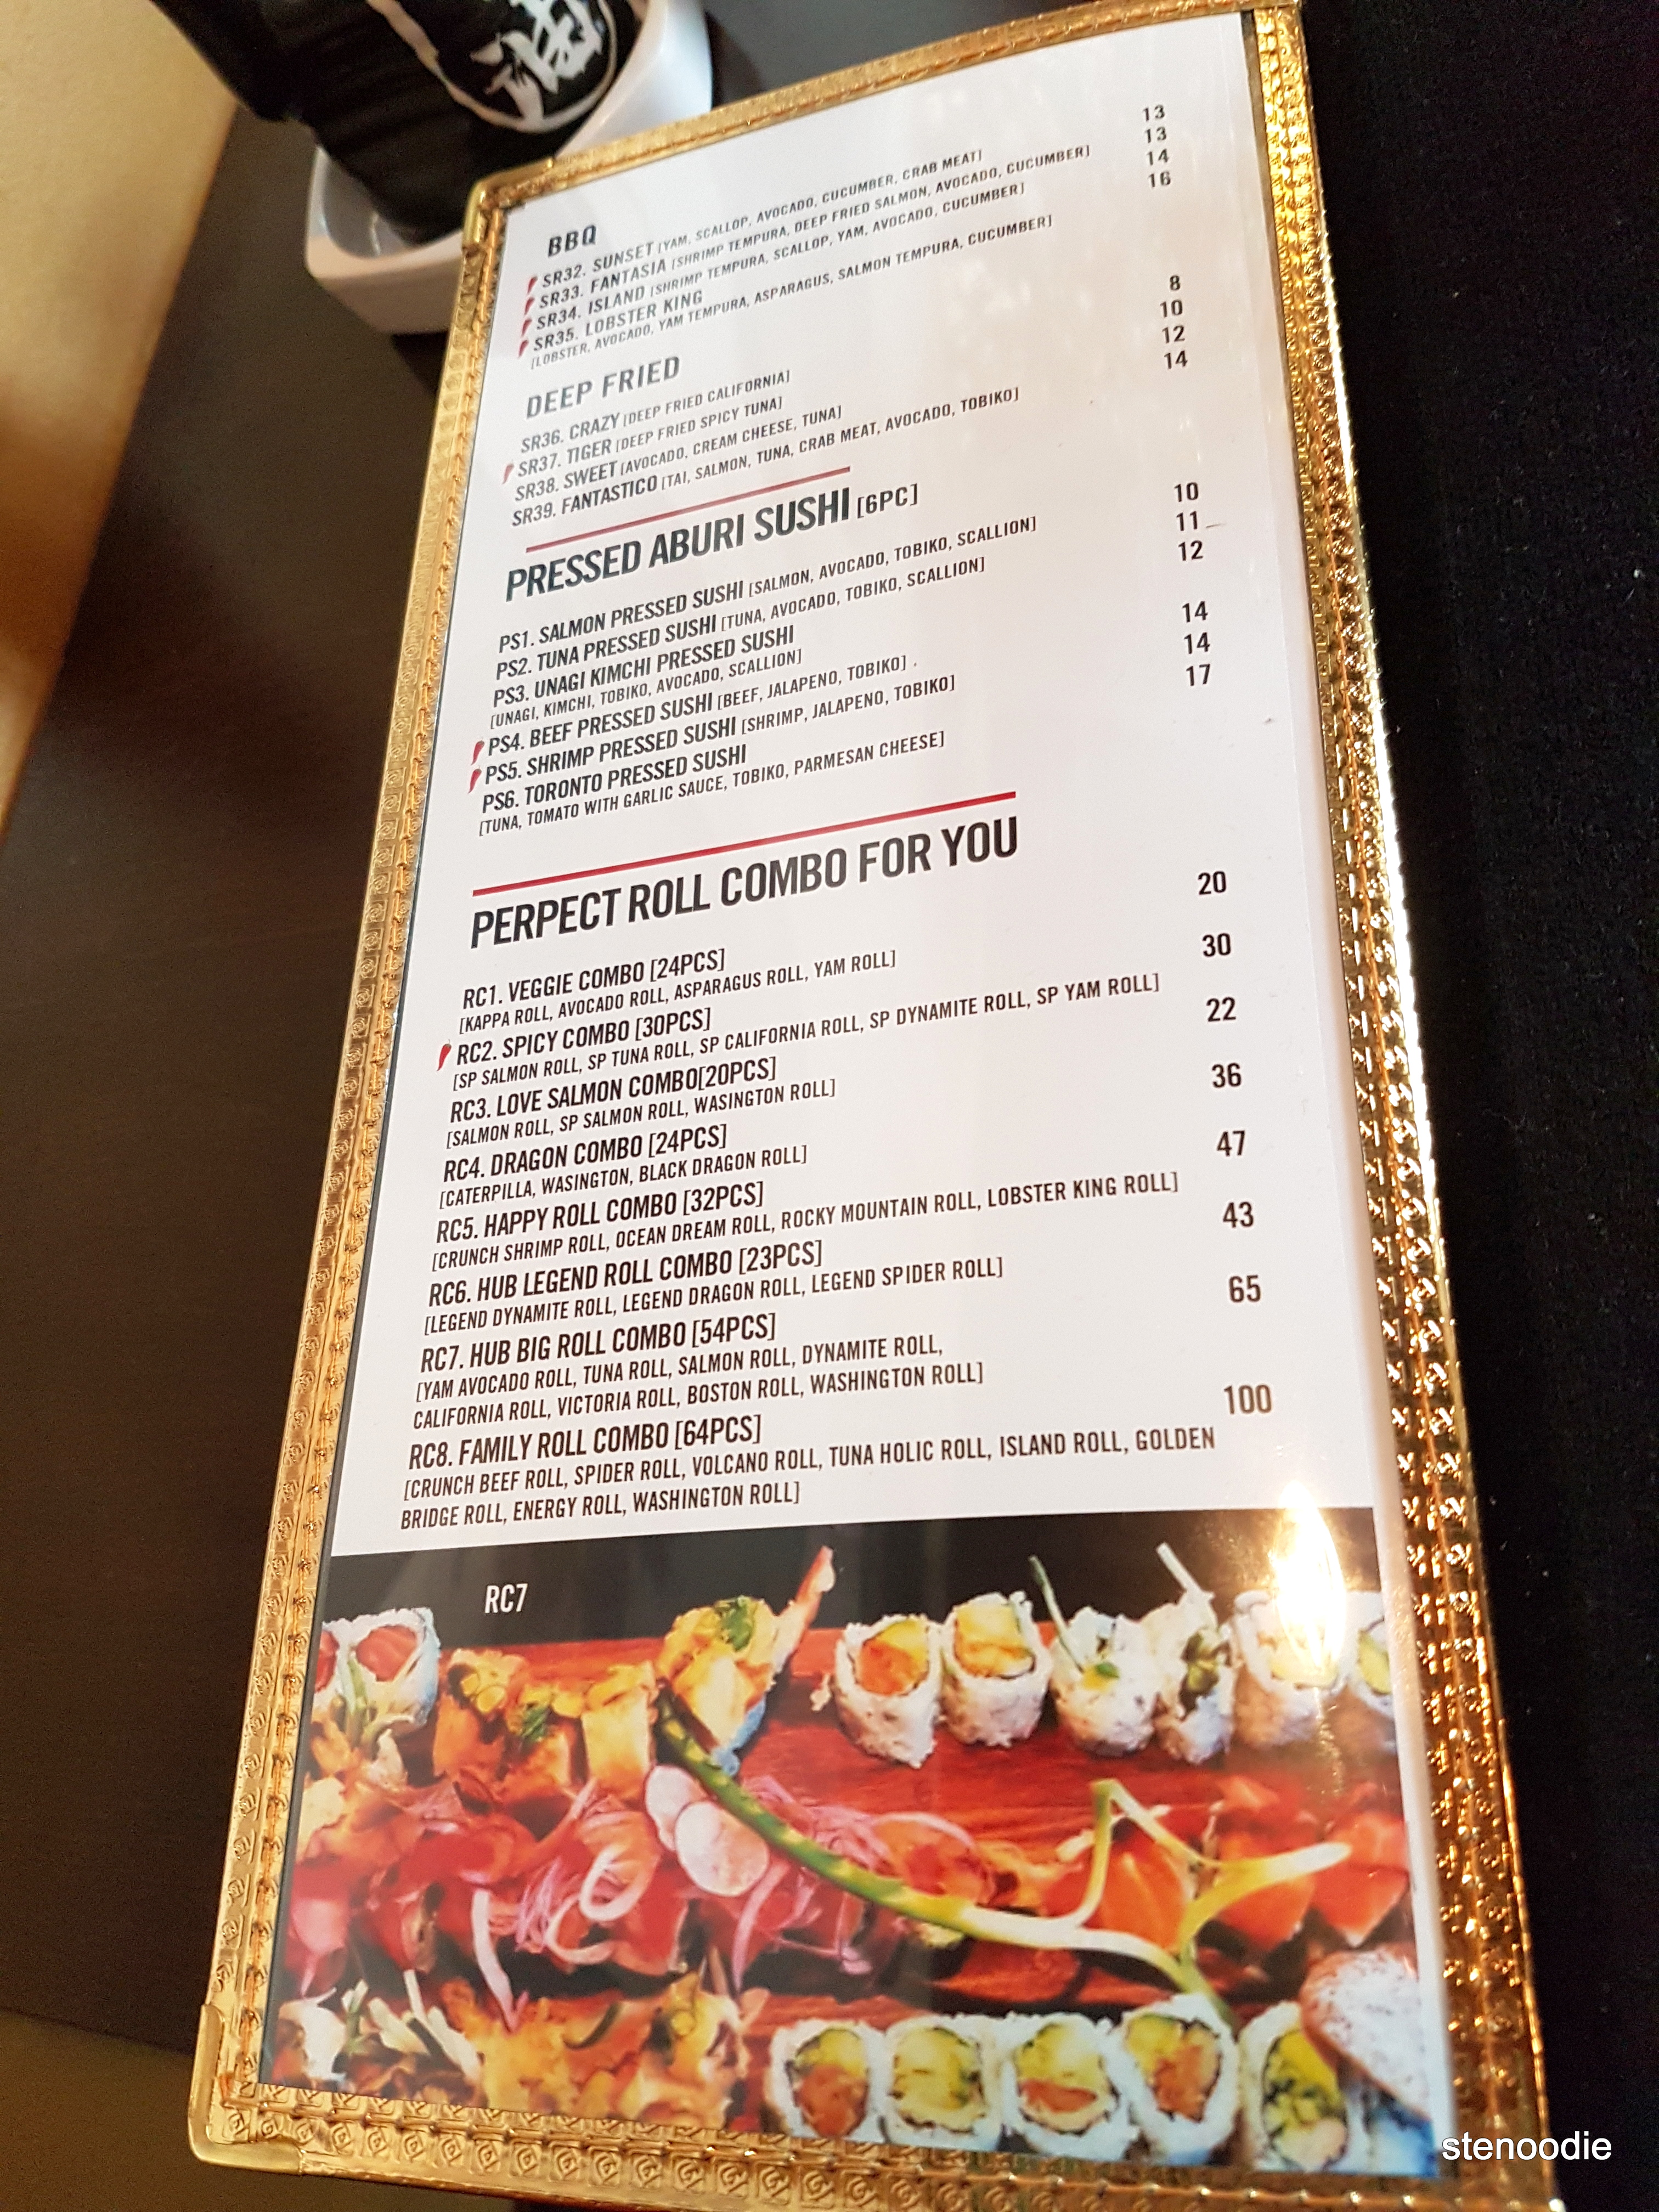 Hub Sushi Fusion Japanese Restaurant sushi dinner menu